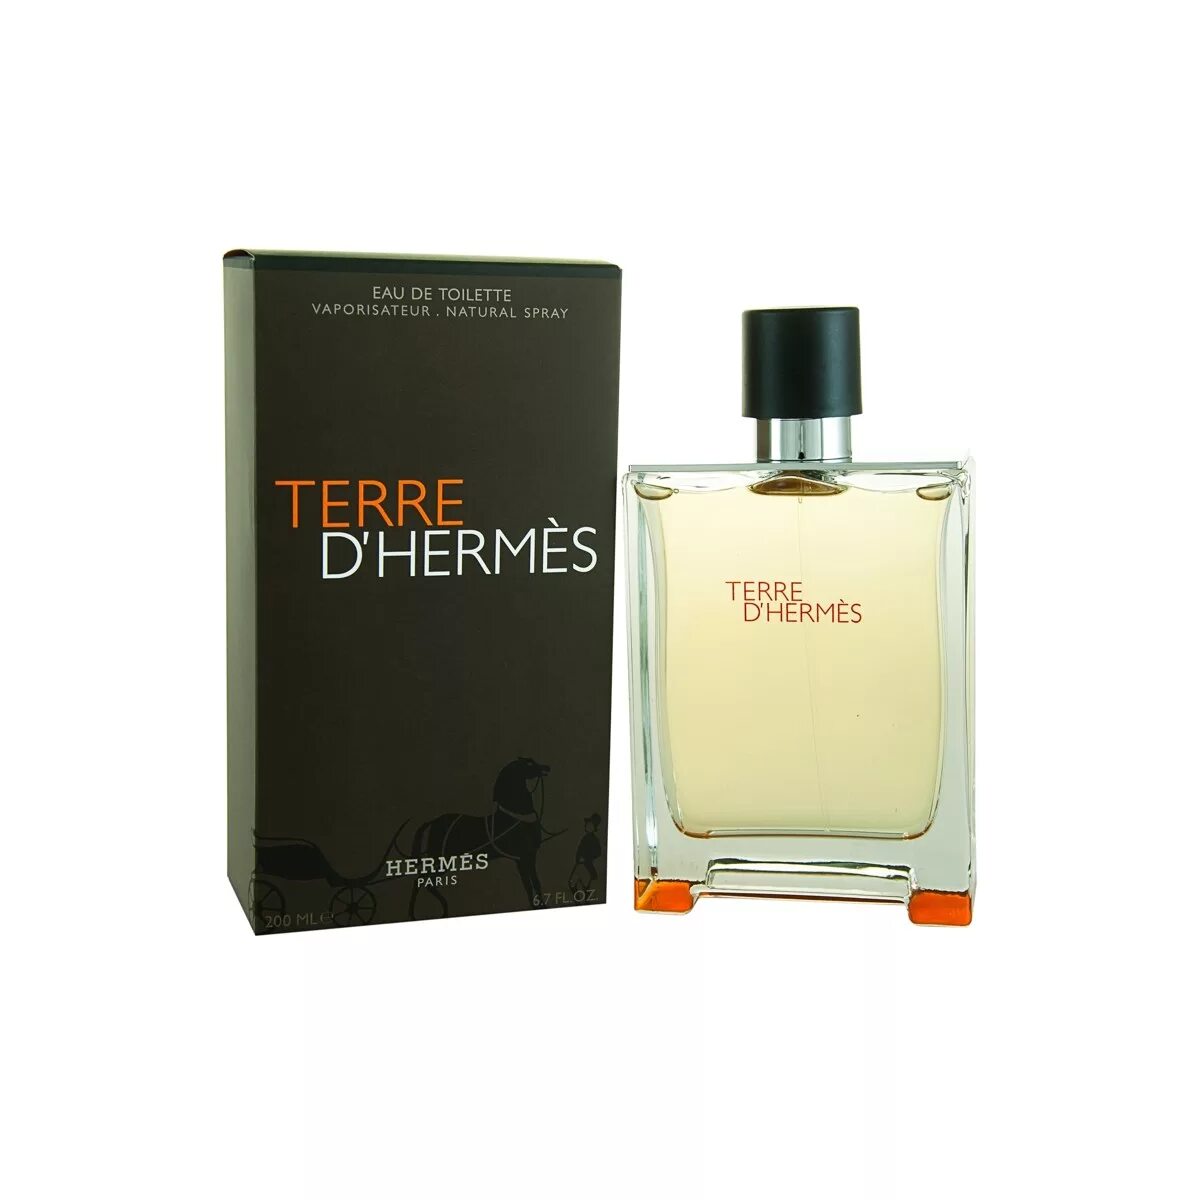 Туалетная вода terre. Hermes Terre d'Hermes 100ml. Terre d'Hermes, 100 ml. Terre d'Hermes EDT 100ml. Hermes Terre d Hermes туалетная вода 100.